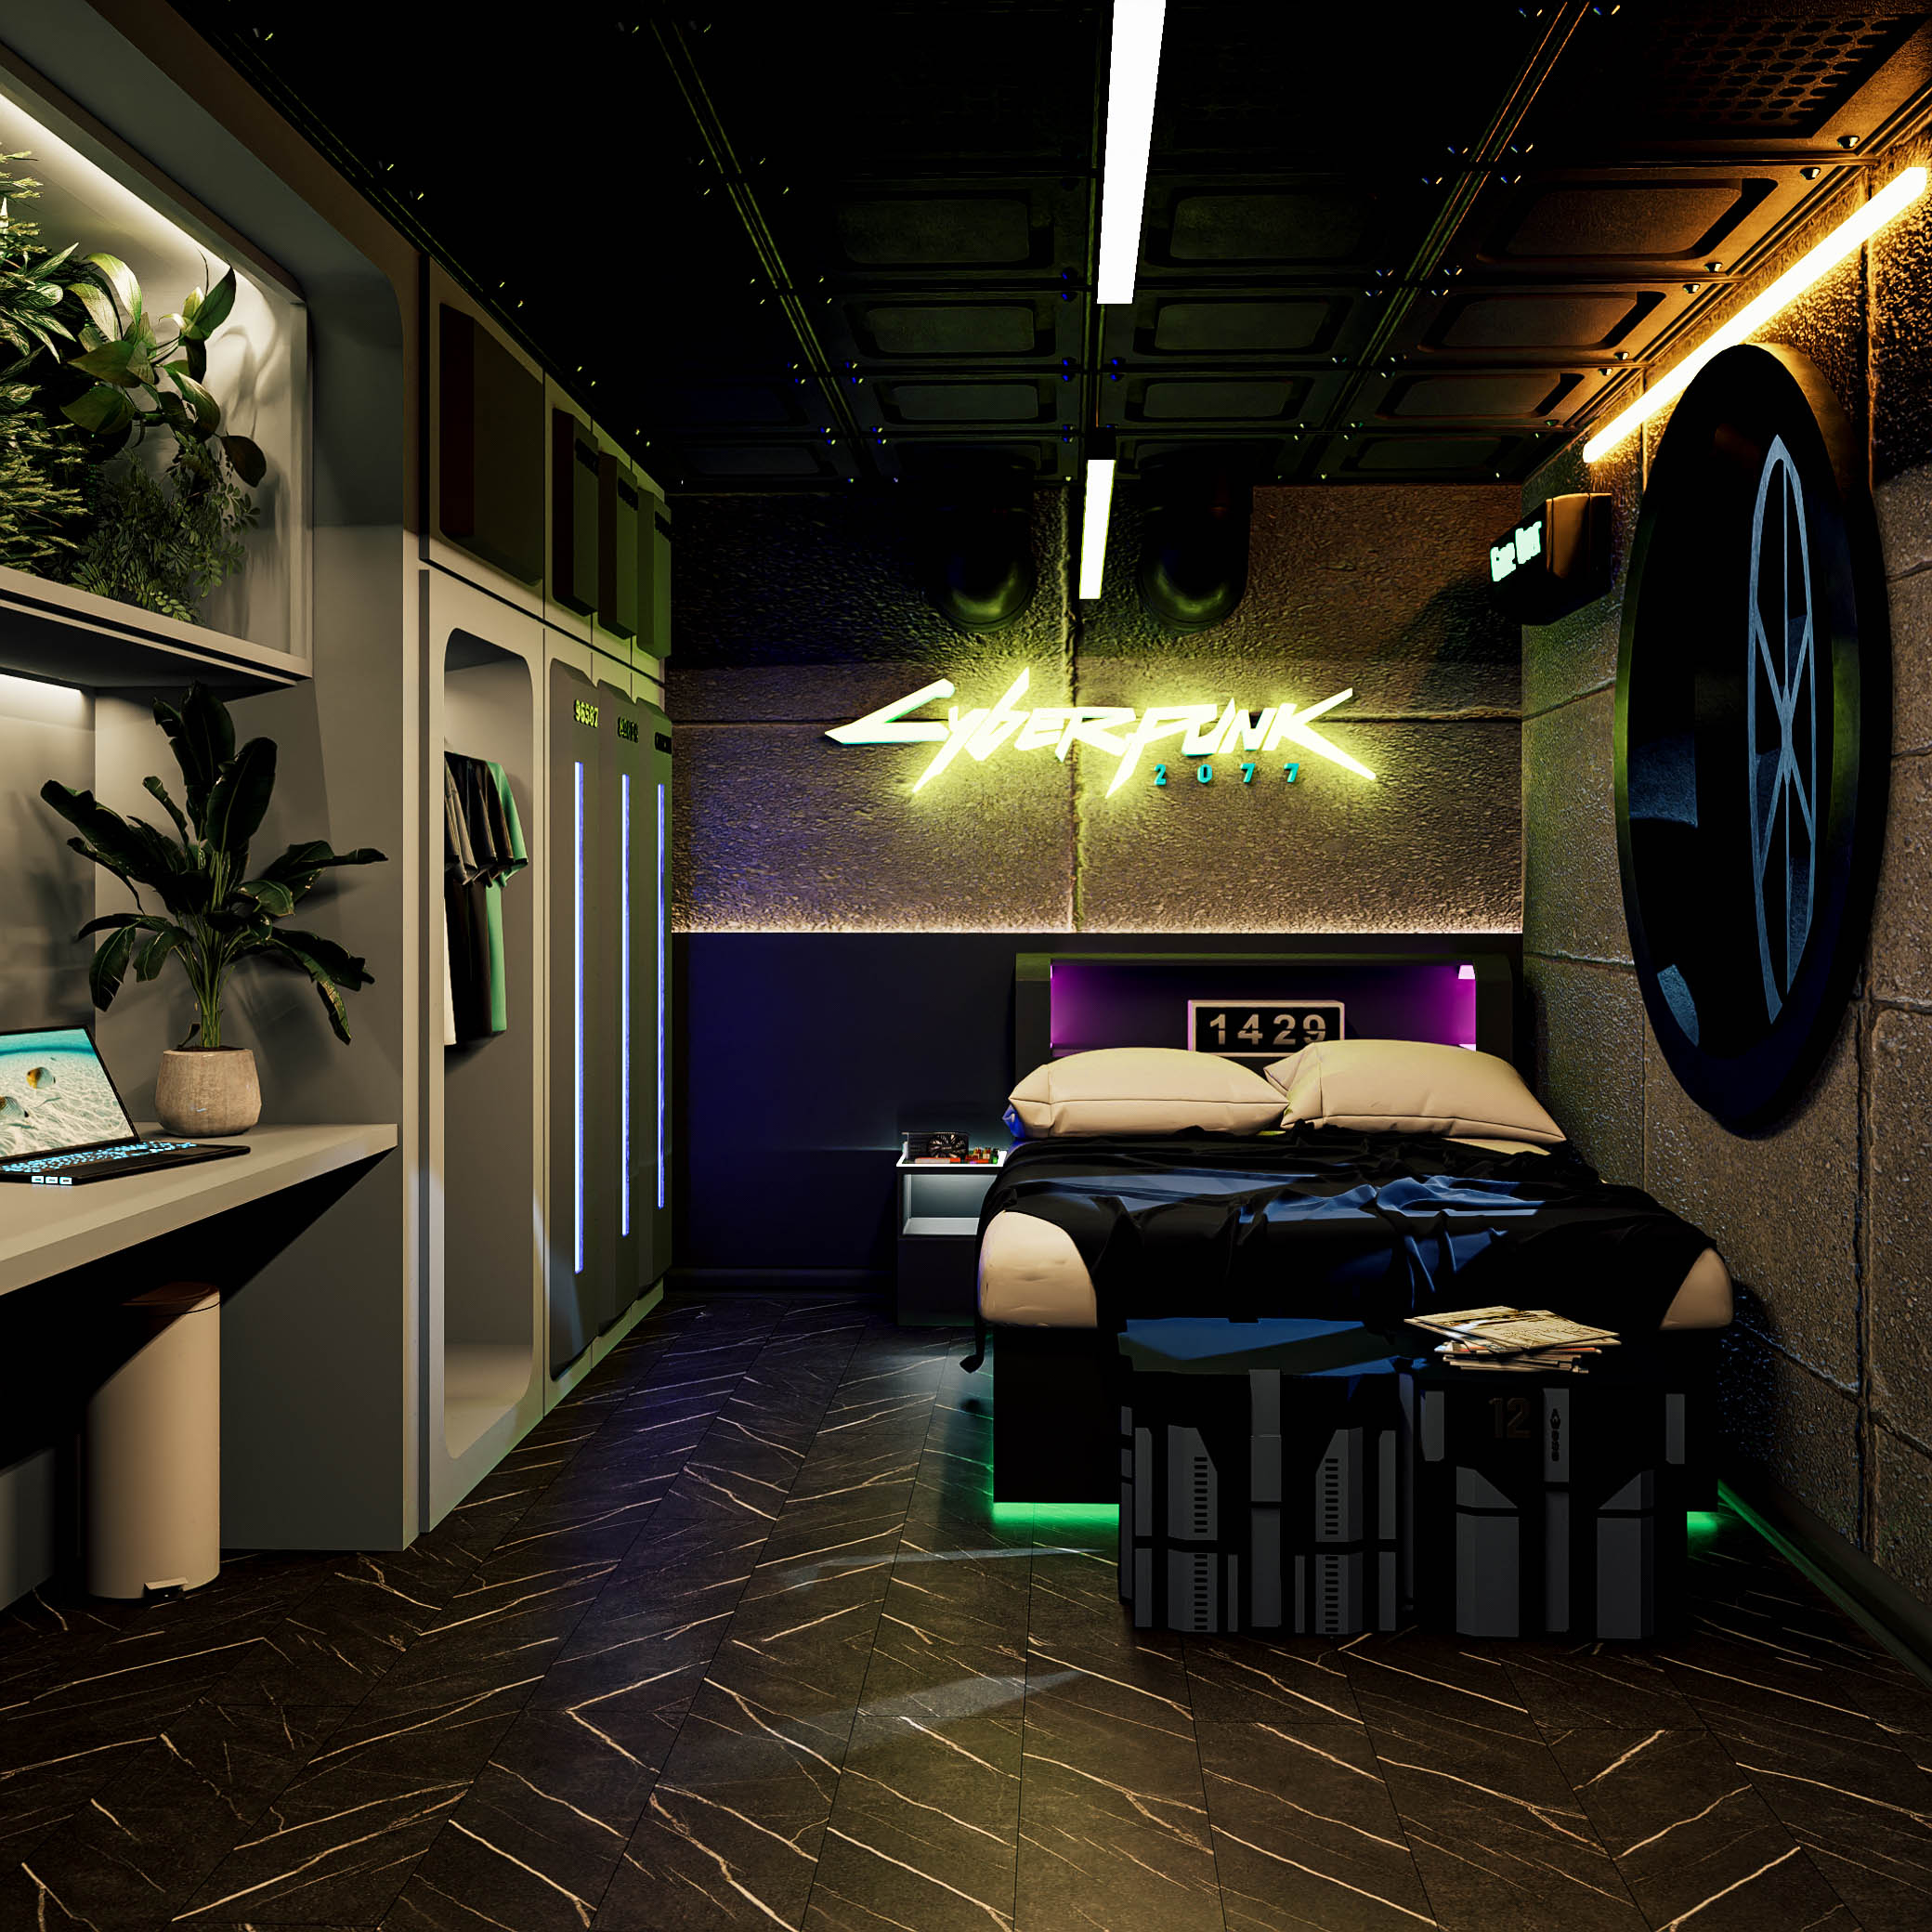 Interior Design: Cyberpunk - Gallery - D5 RENDER FORUM